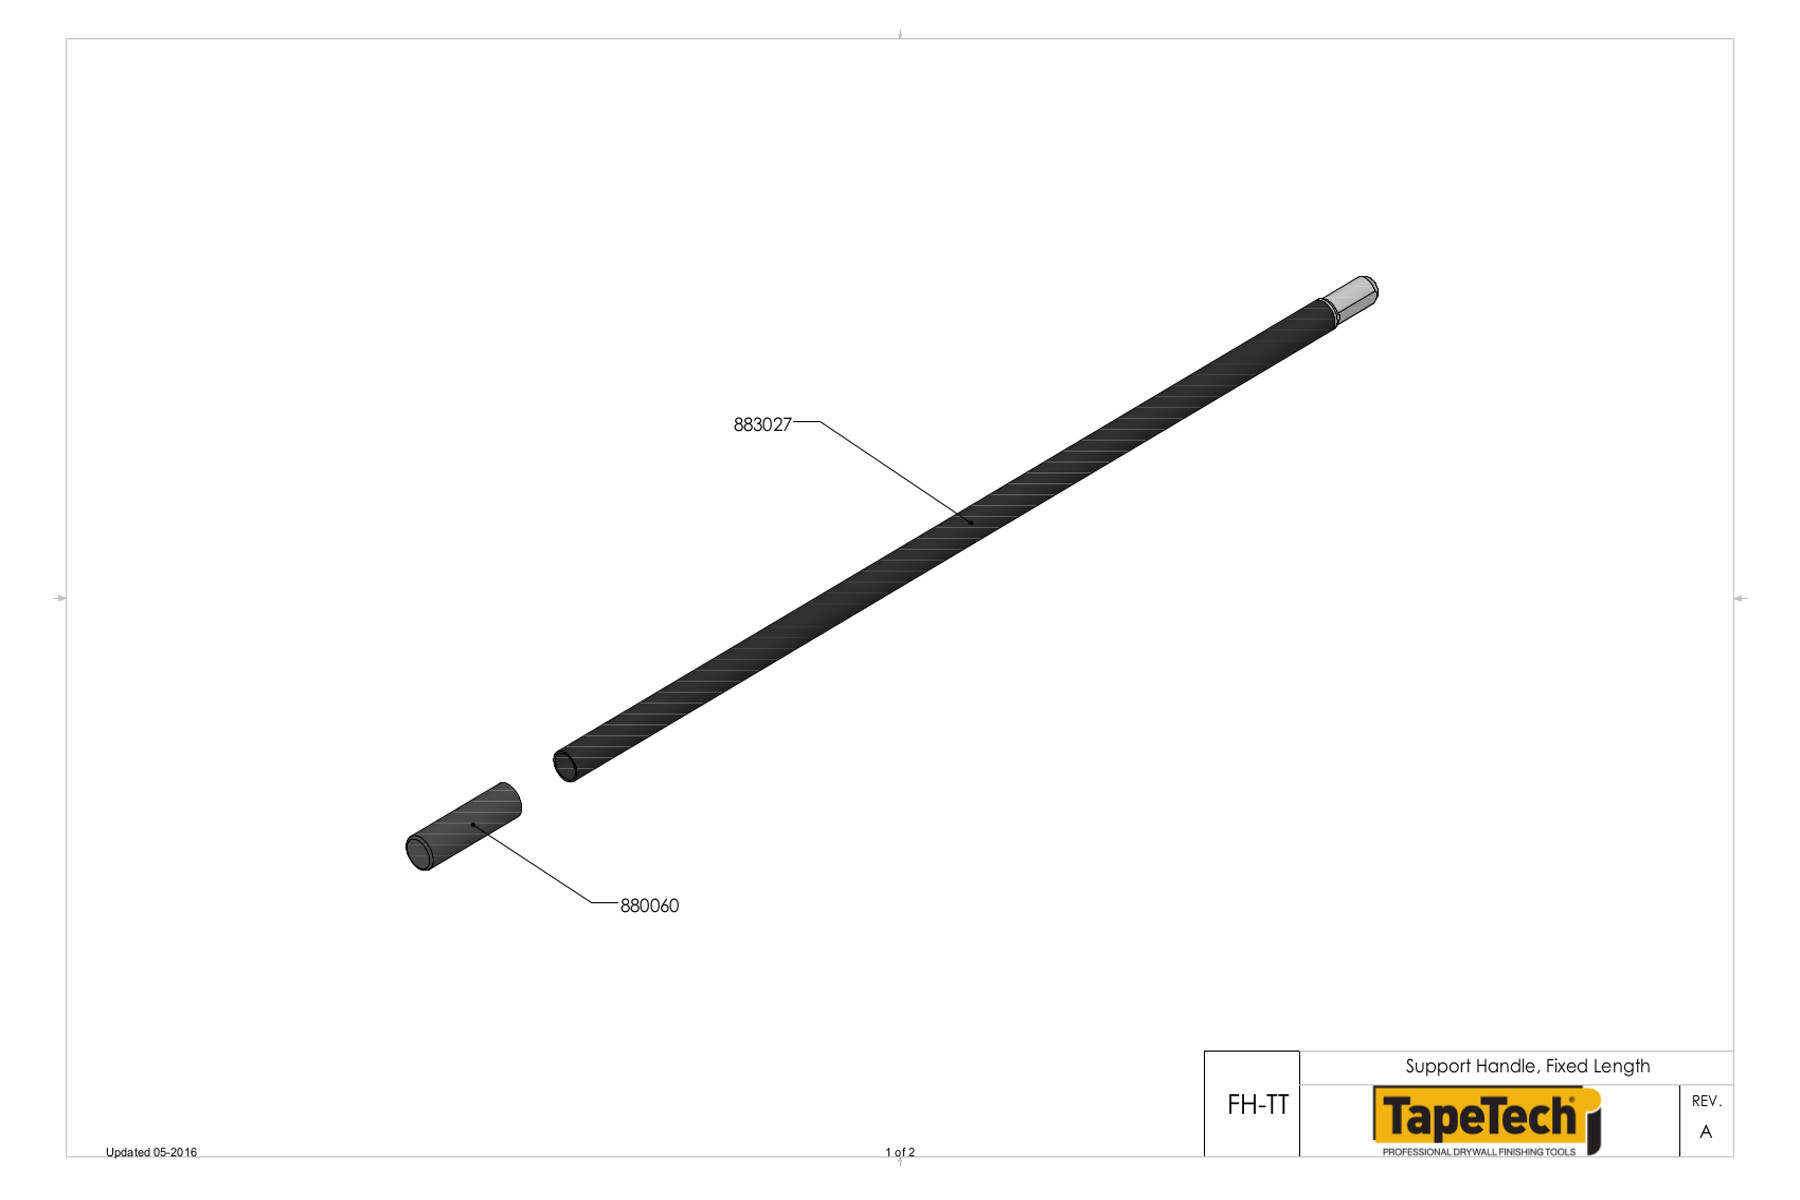 TapeTech® Universal Fiberglass Handle Schematic (FHTT)